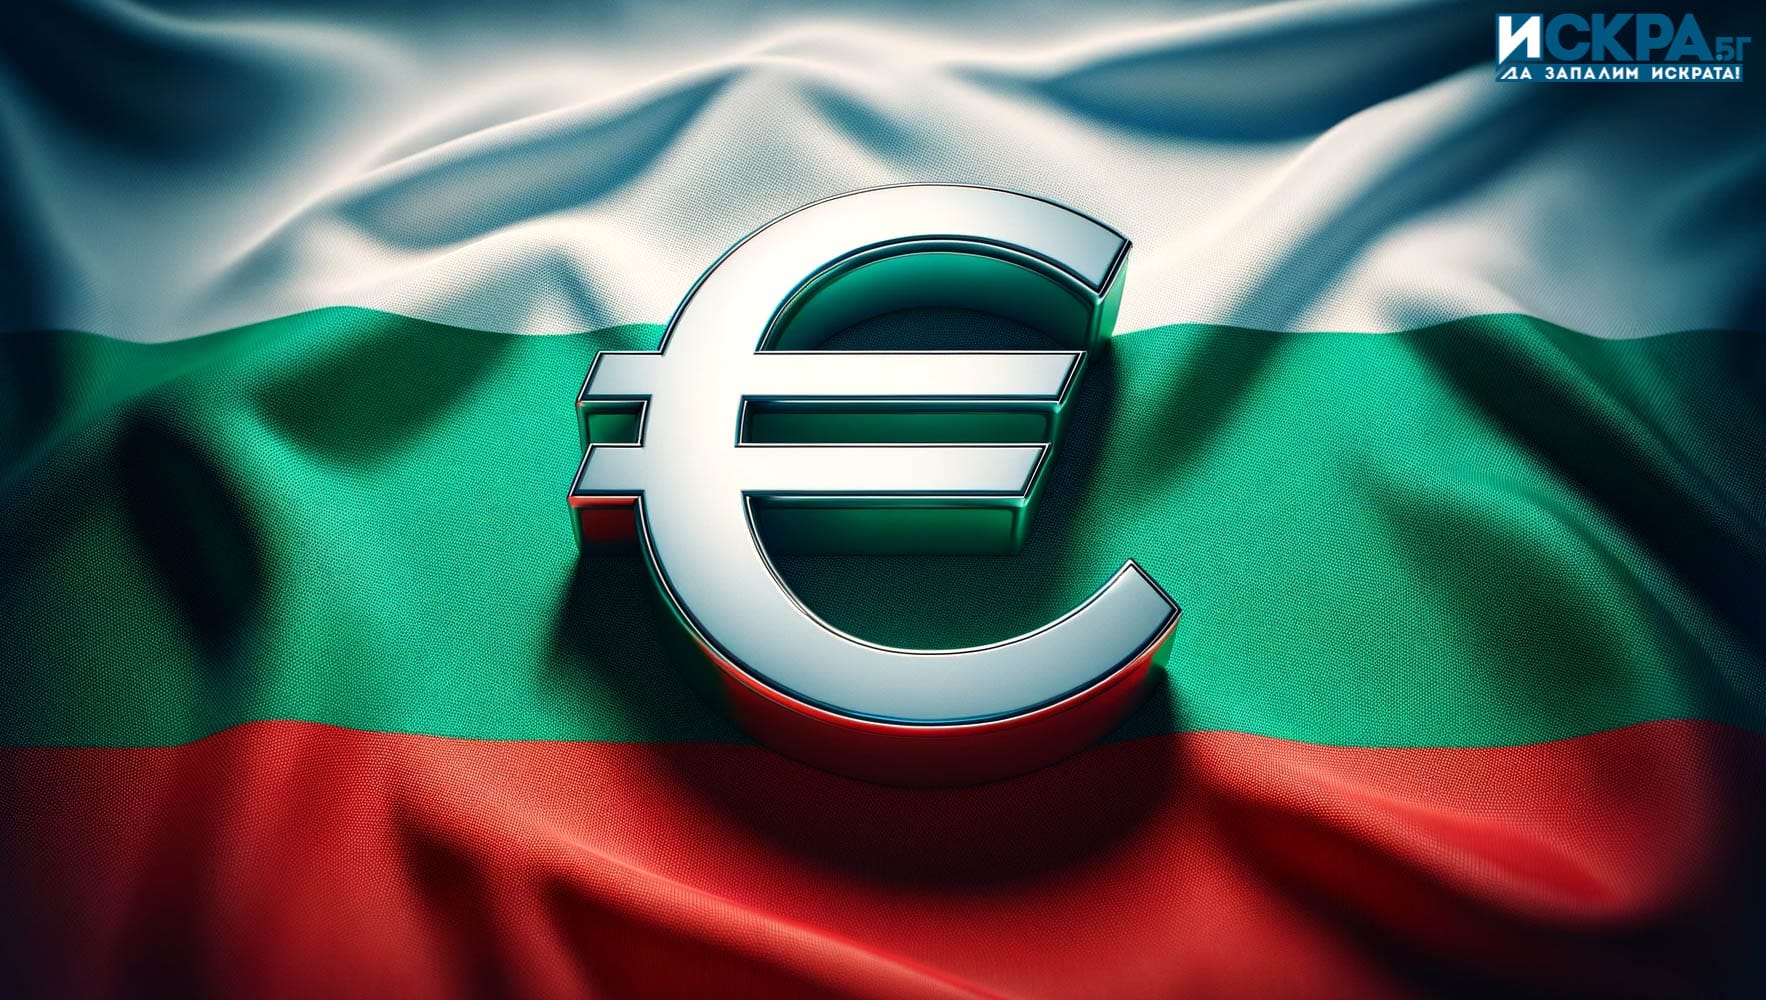 Ако България приеме еврото за своя национална валута, цените ще